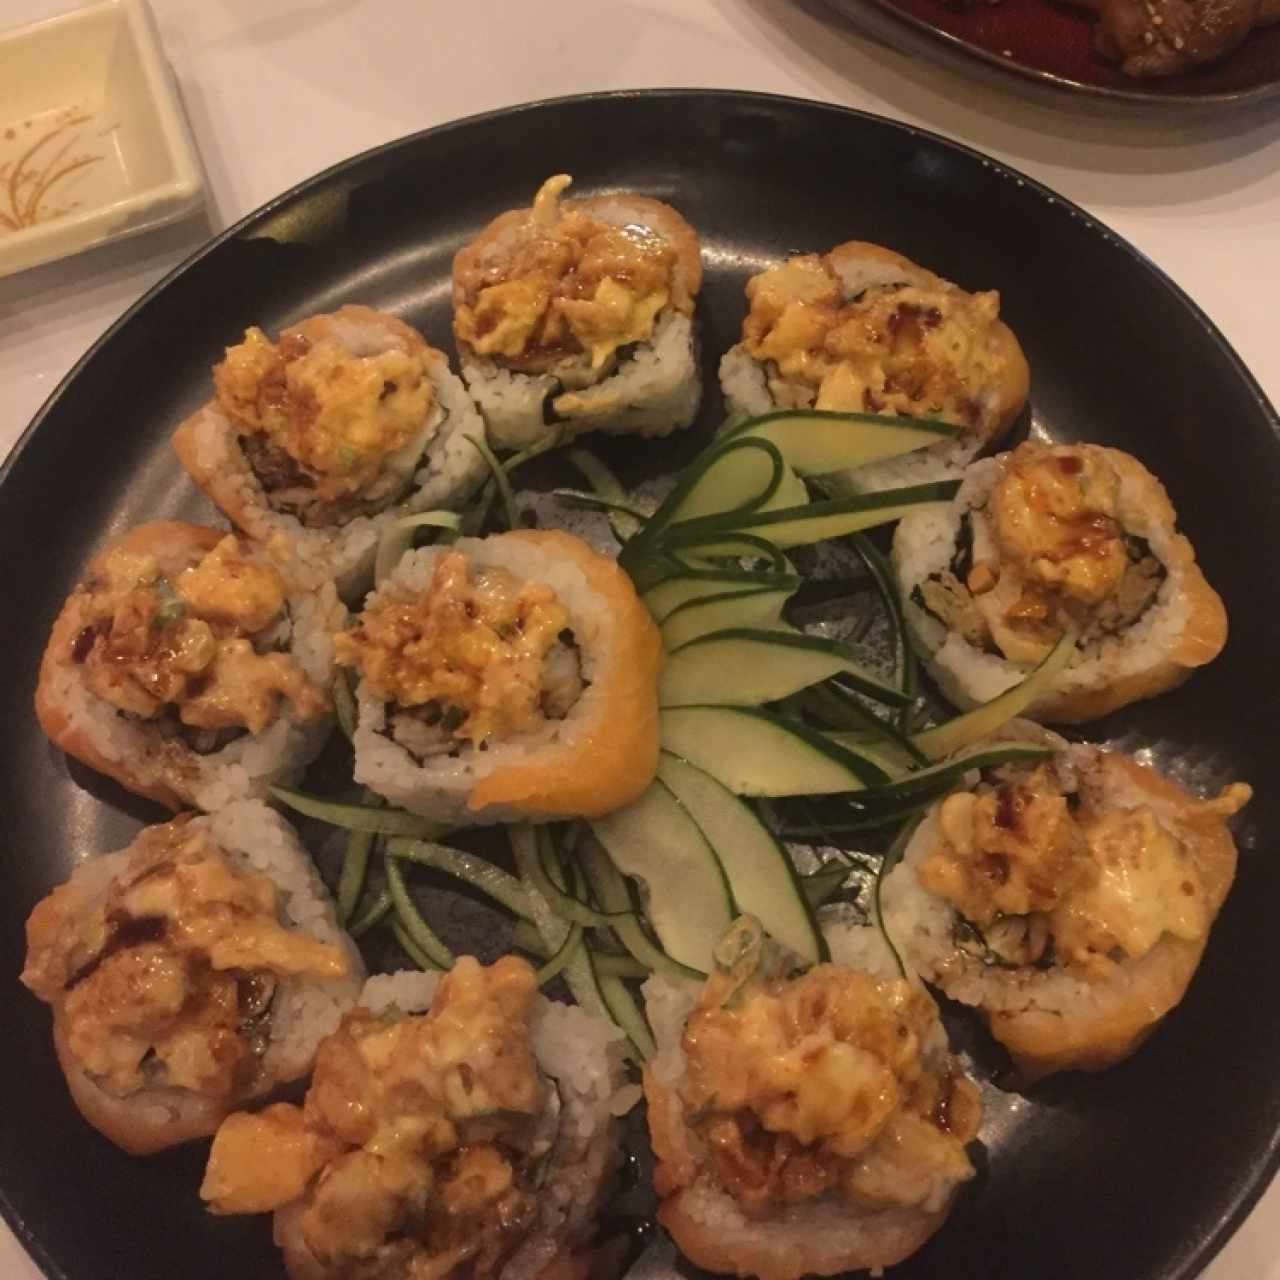 Nigiri sushi - Kani kama